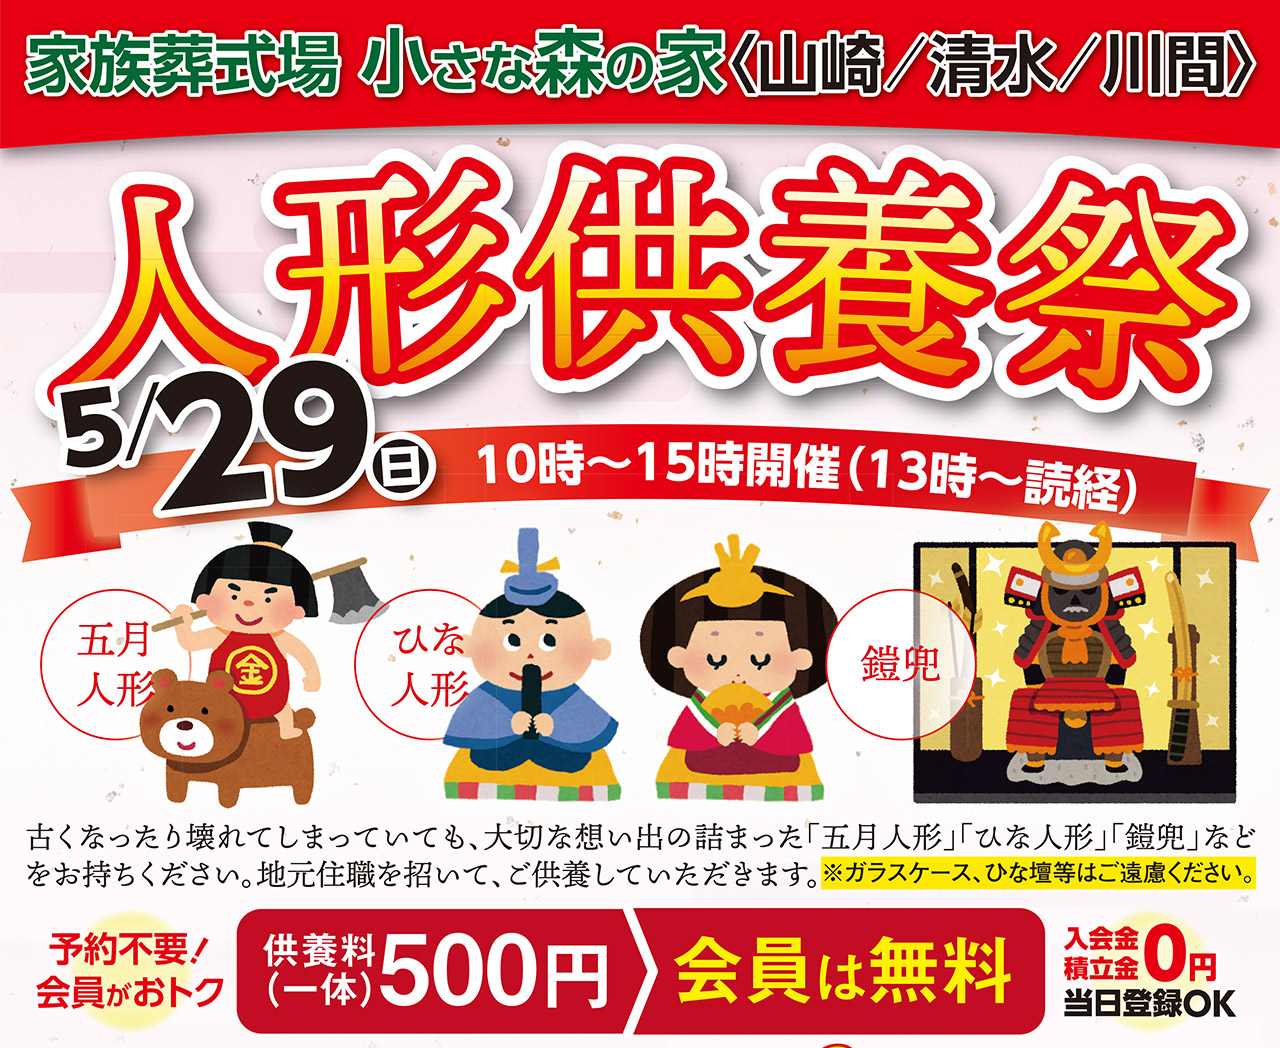 野田市内3式場で人形供養祭を開催！のイメージ画像